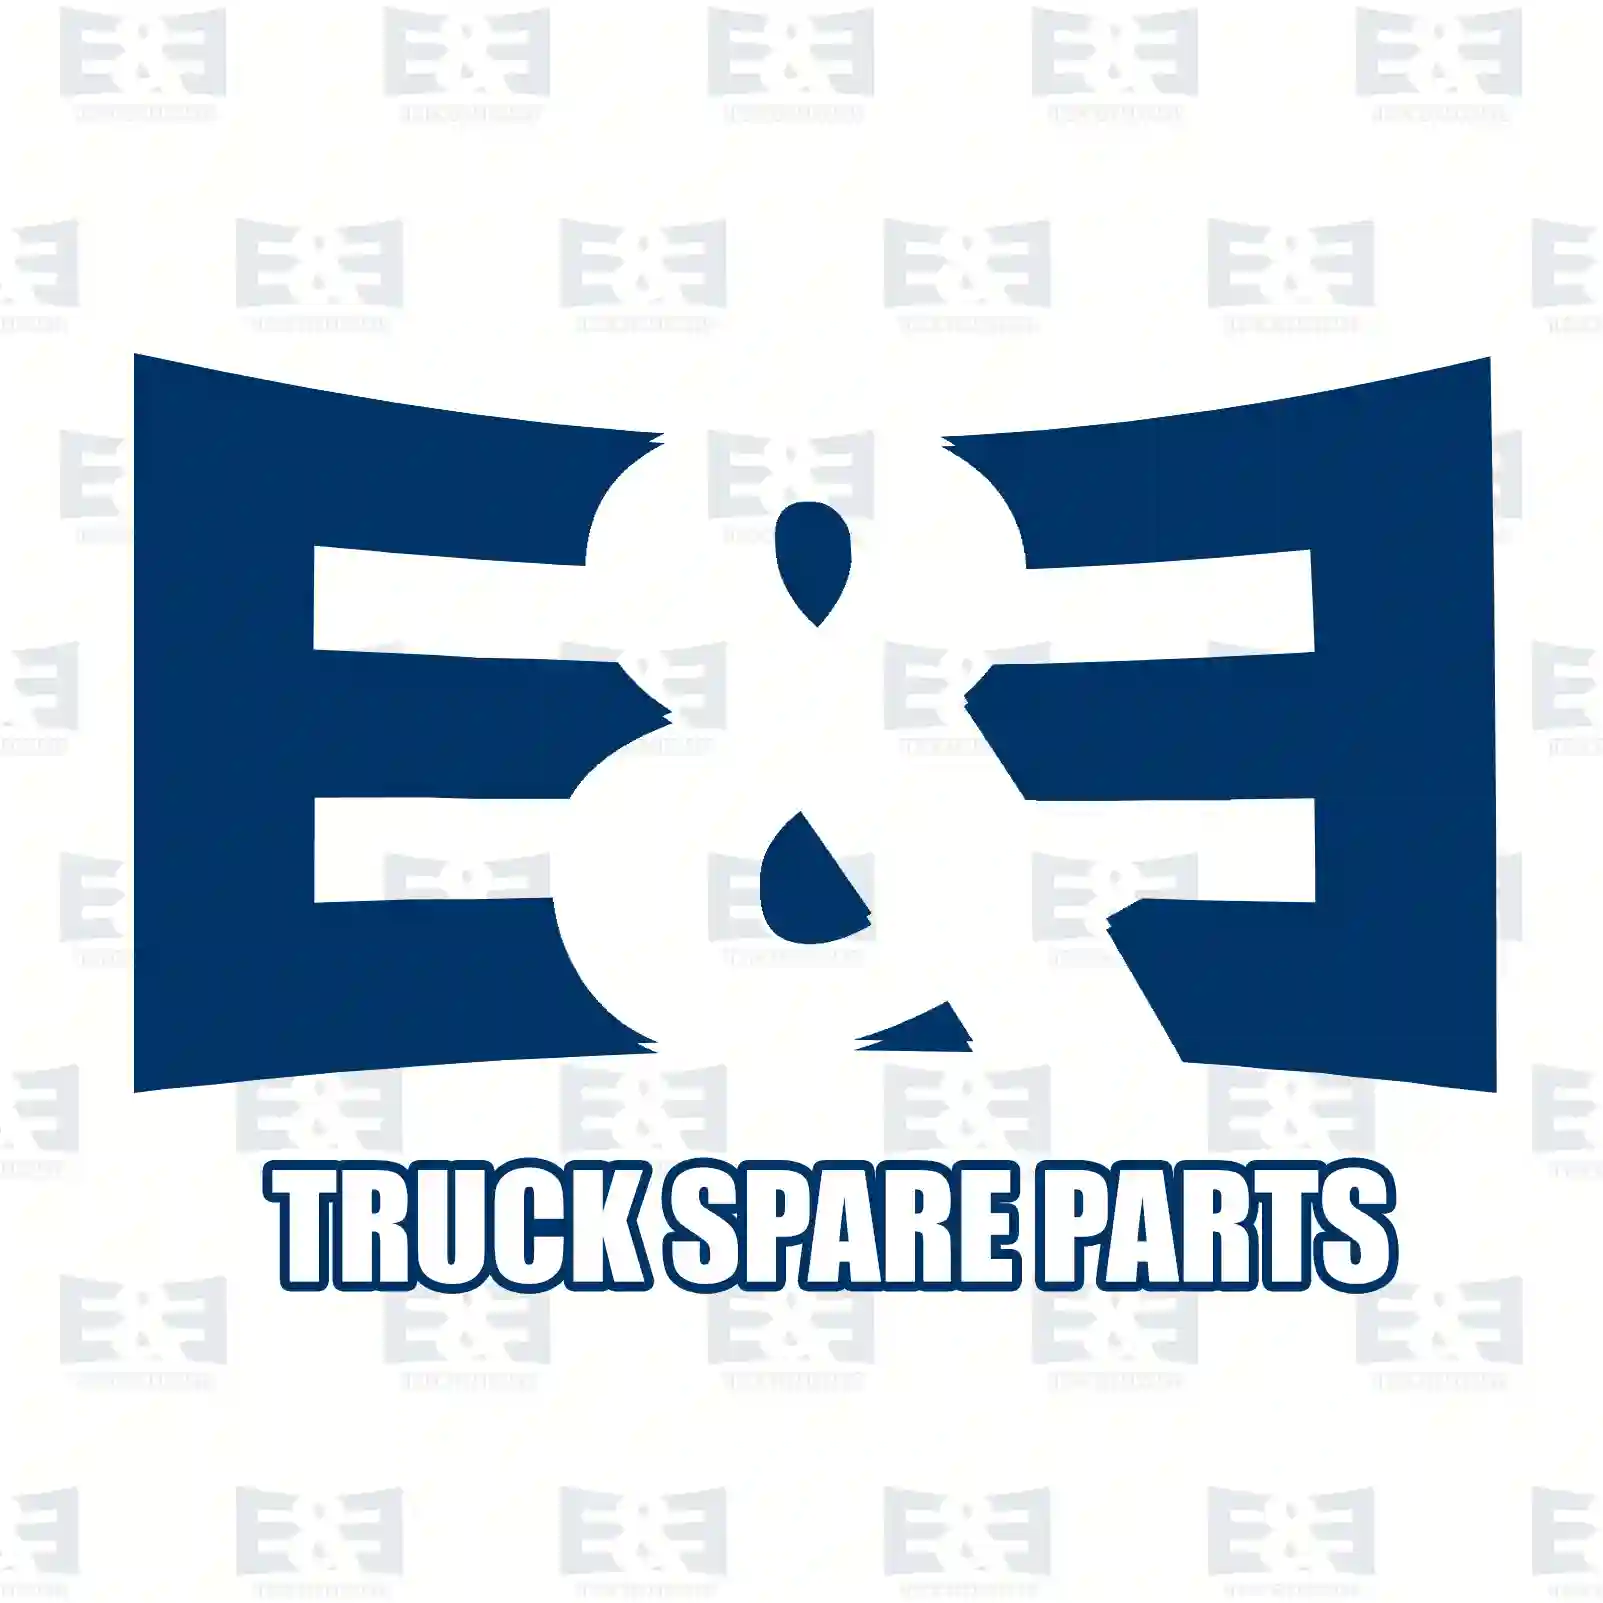  Seal ring, nozzle holder || E&E Truck Spare Parts | Truck Spare Parts, Auotomotive Spare Parts